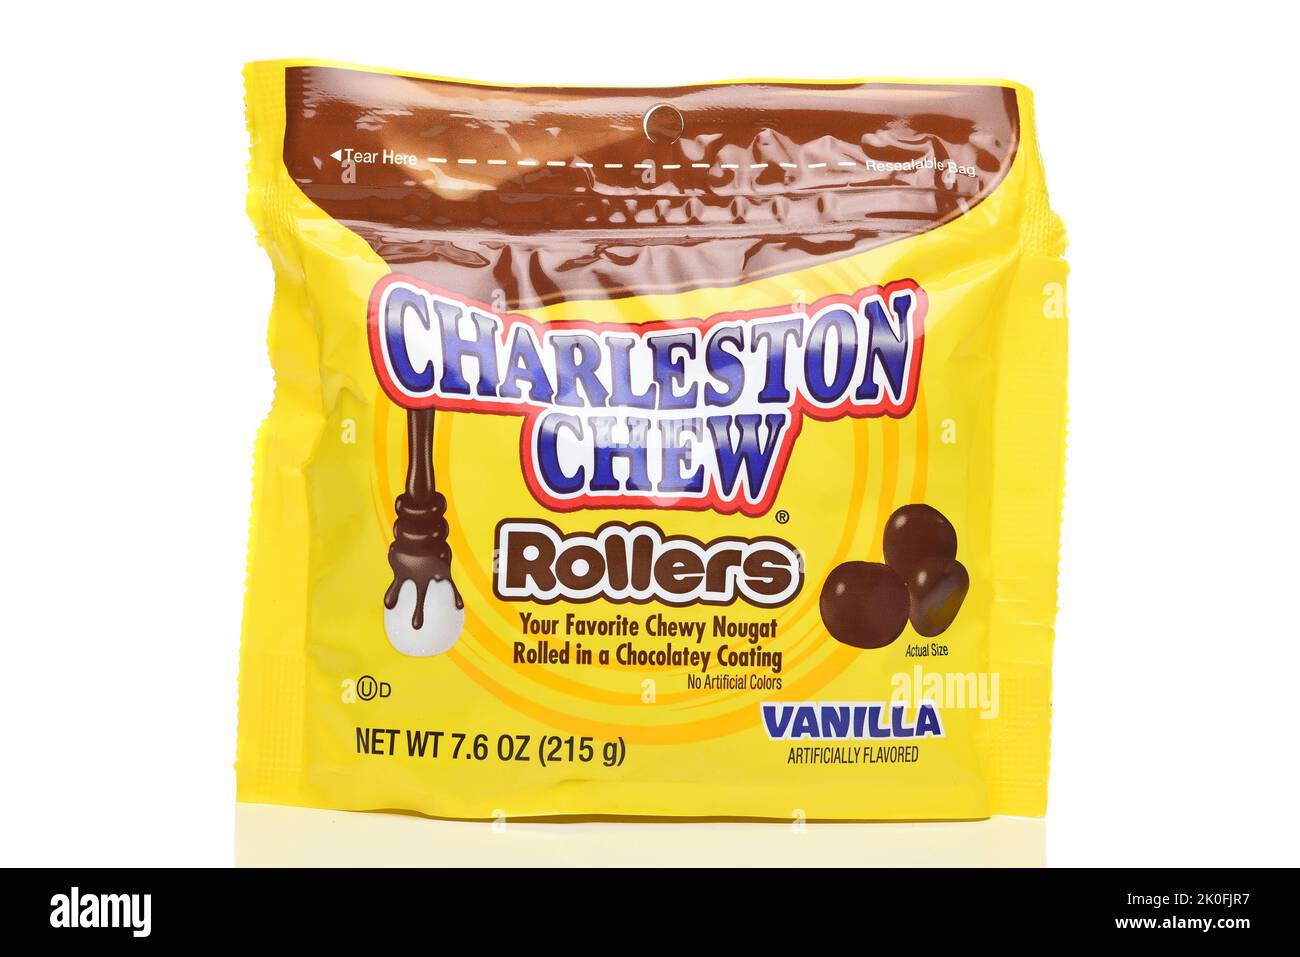 IRVINE, KALIFORNIEN - 10. SEPTEMBER 2022: Ein Sack Charleston Chew Rollers. Stockfoto